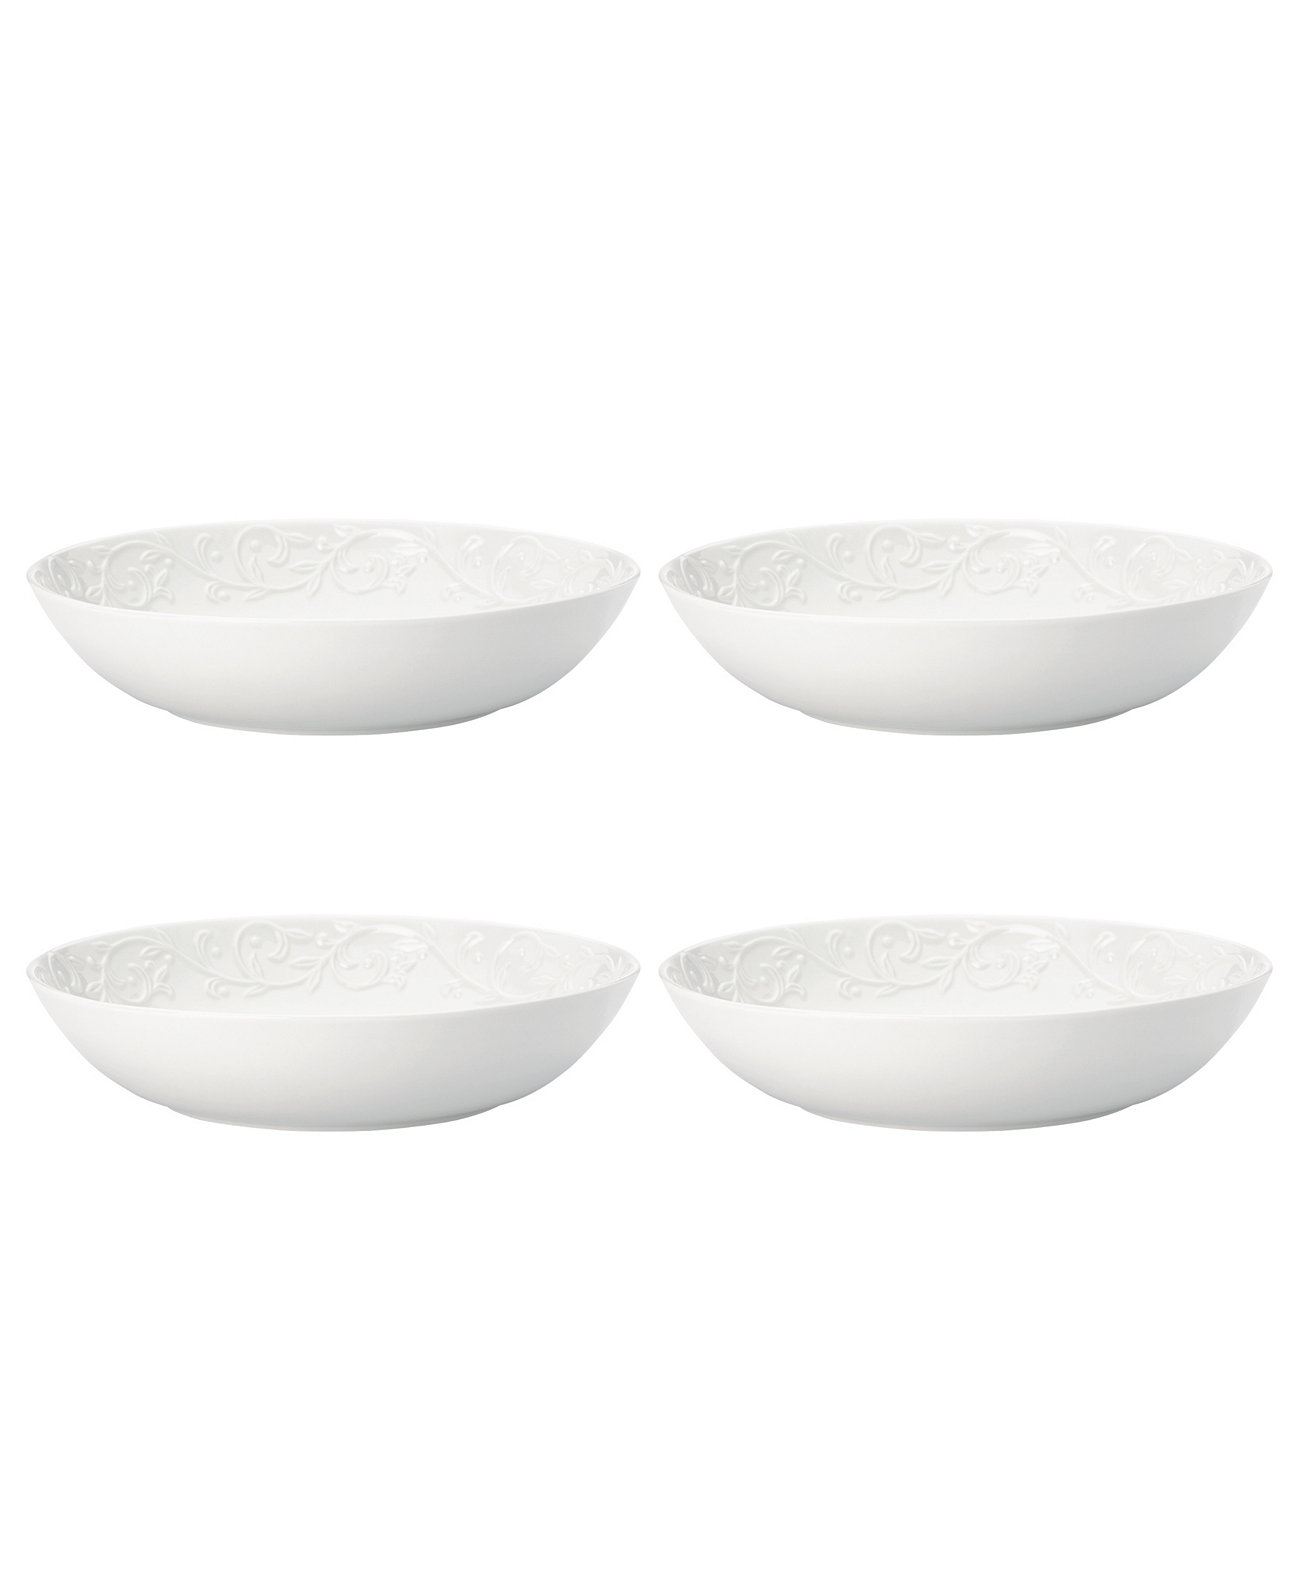 Резные тарелки для пасты Opal Innocence, набор из 4 шт. Lenox